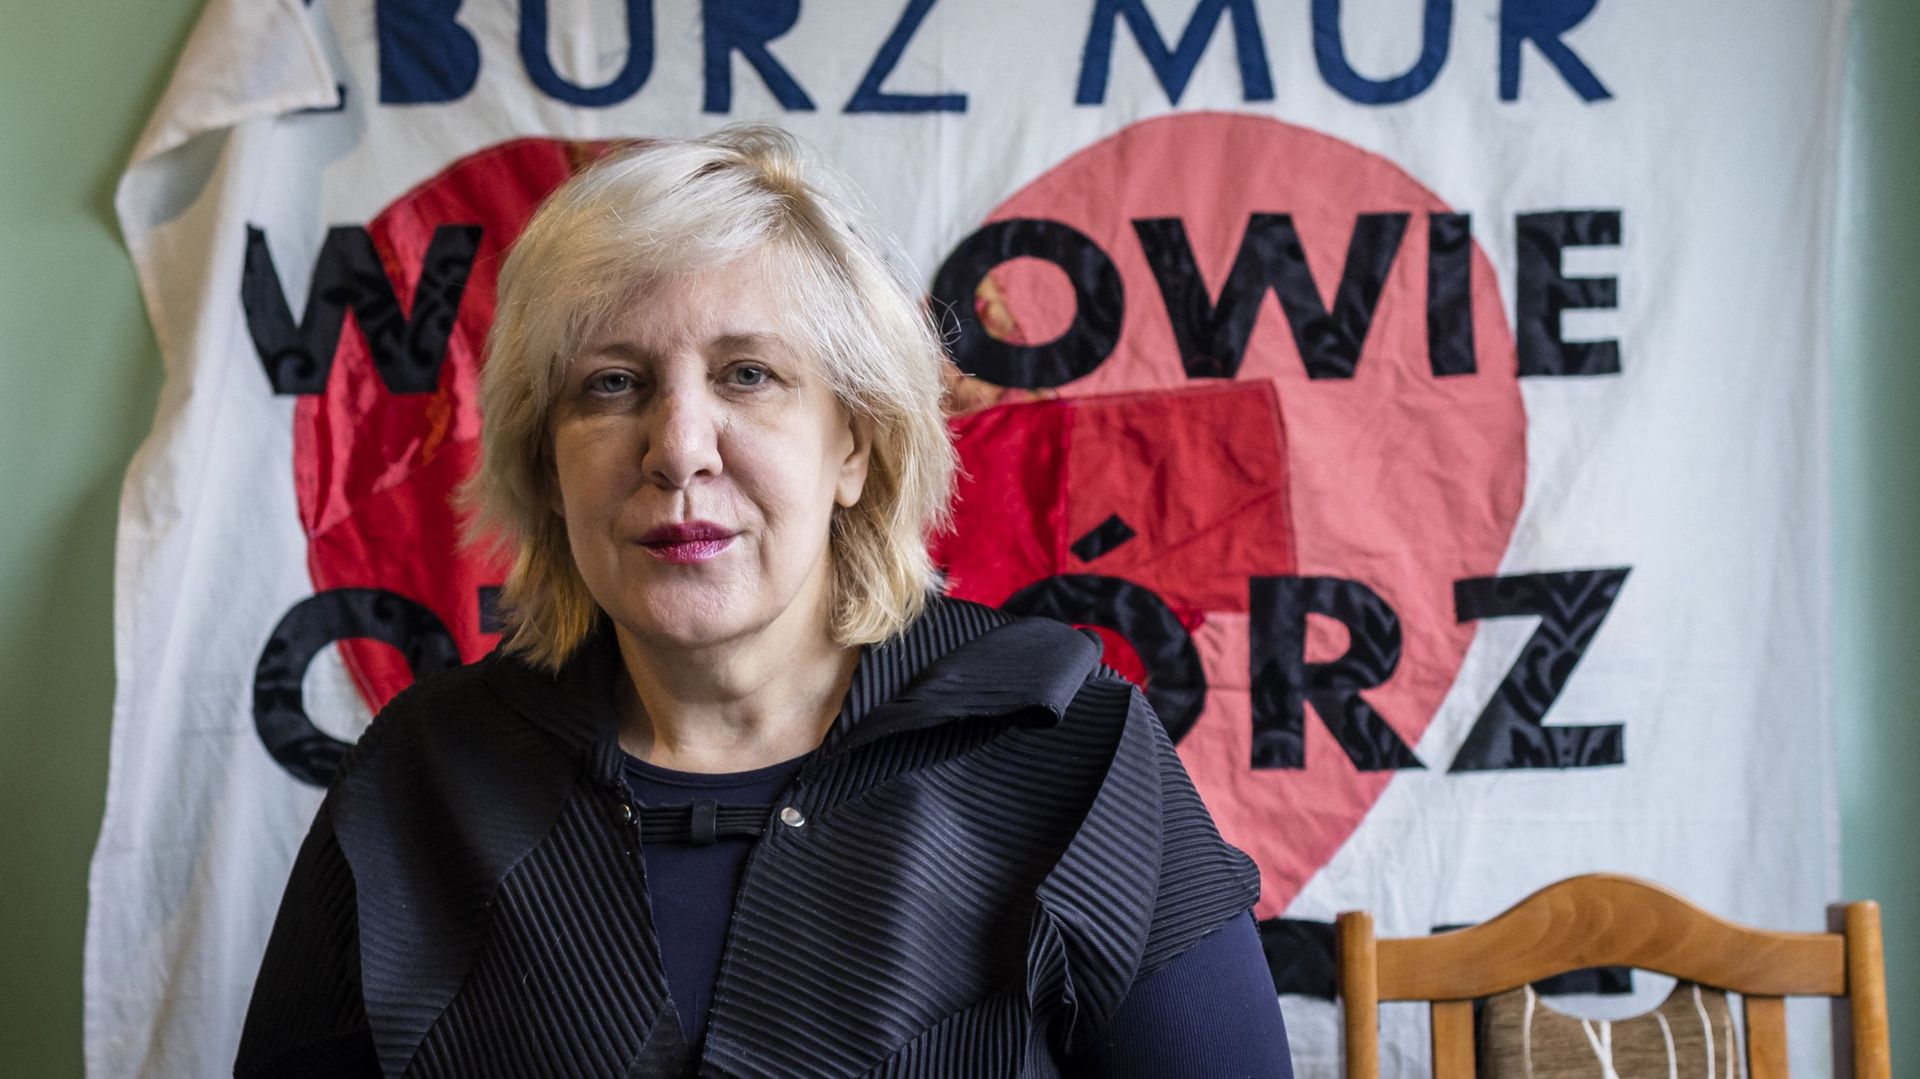 Dunja Mijatovic, commissaire aux droits de l’homme du Conseil de l’Europe, a appelé les parlementaires britanniques à s’opposer au projet de loi controversé sur le droit à l’asile.